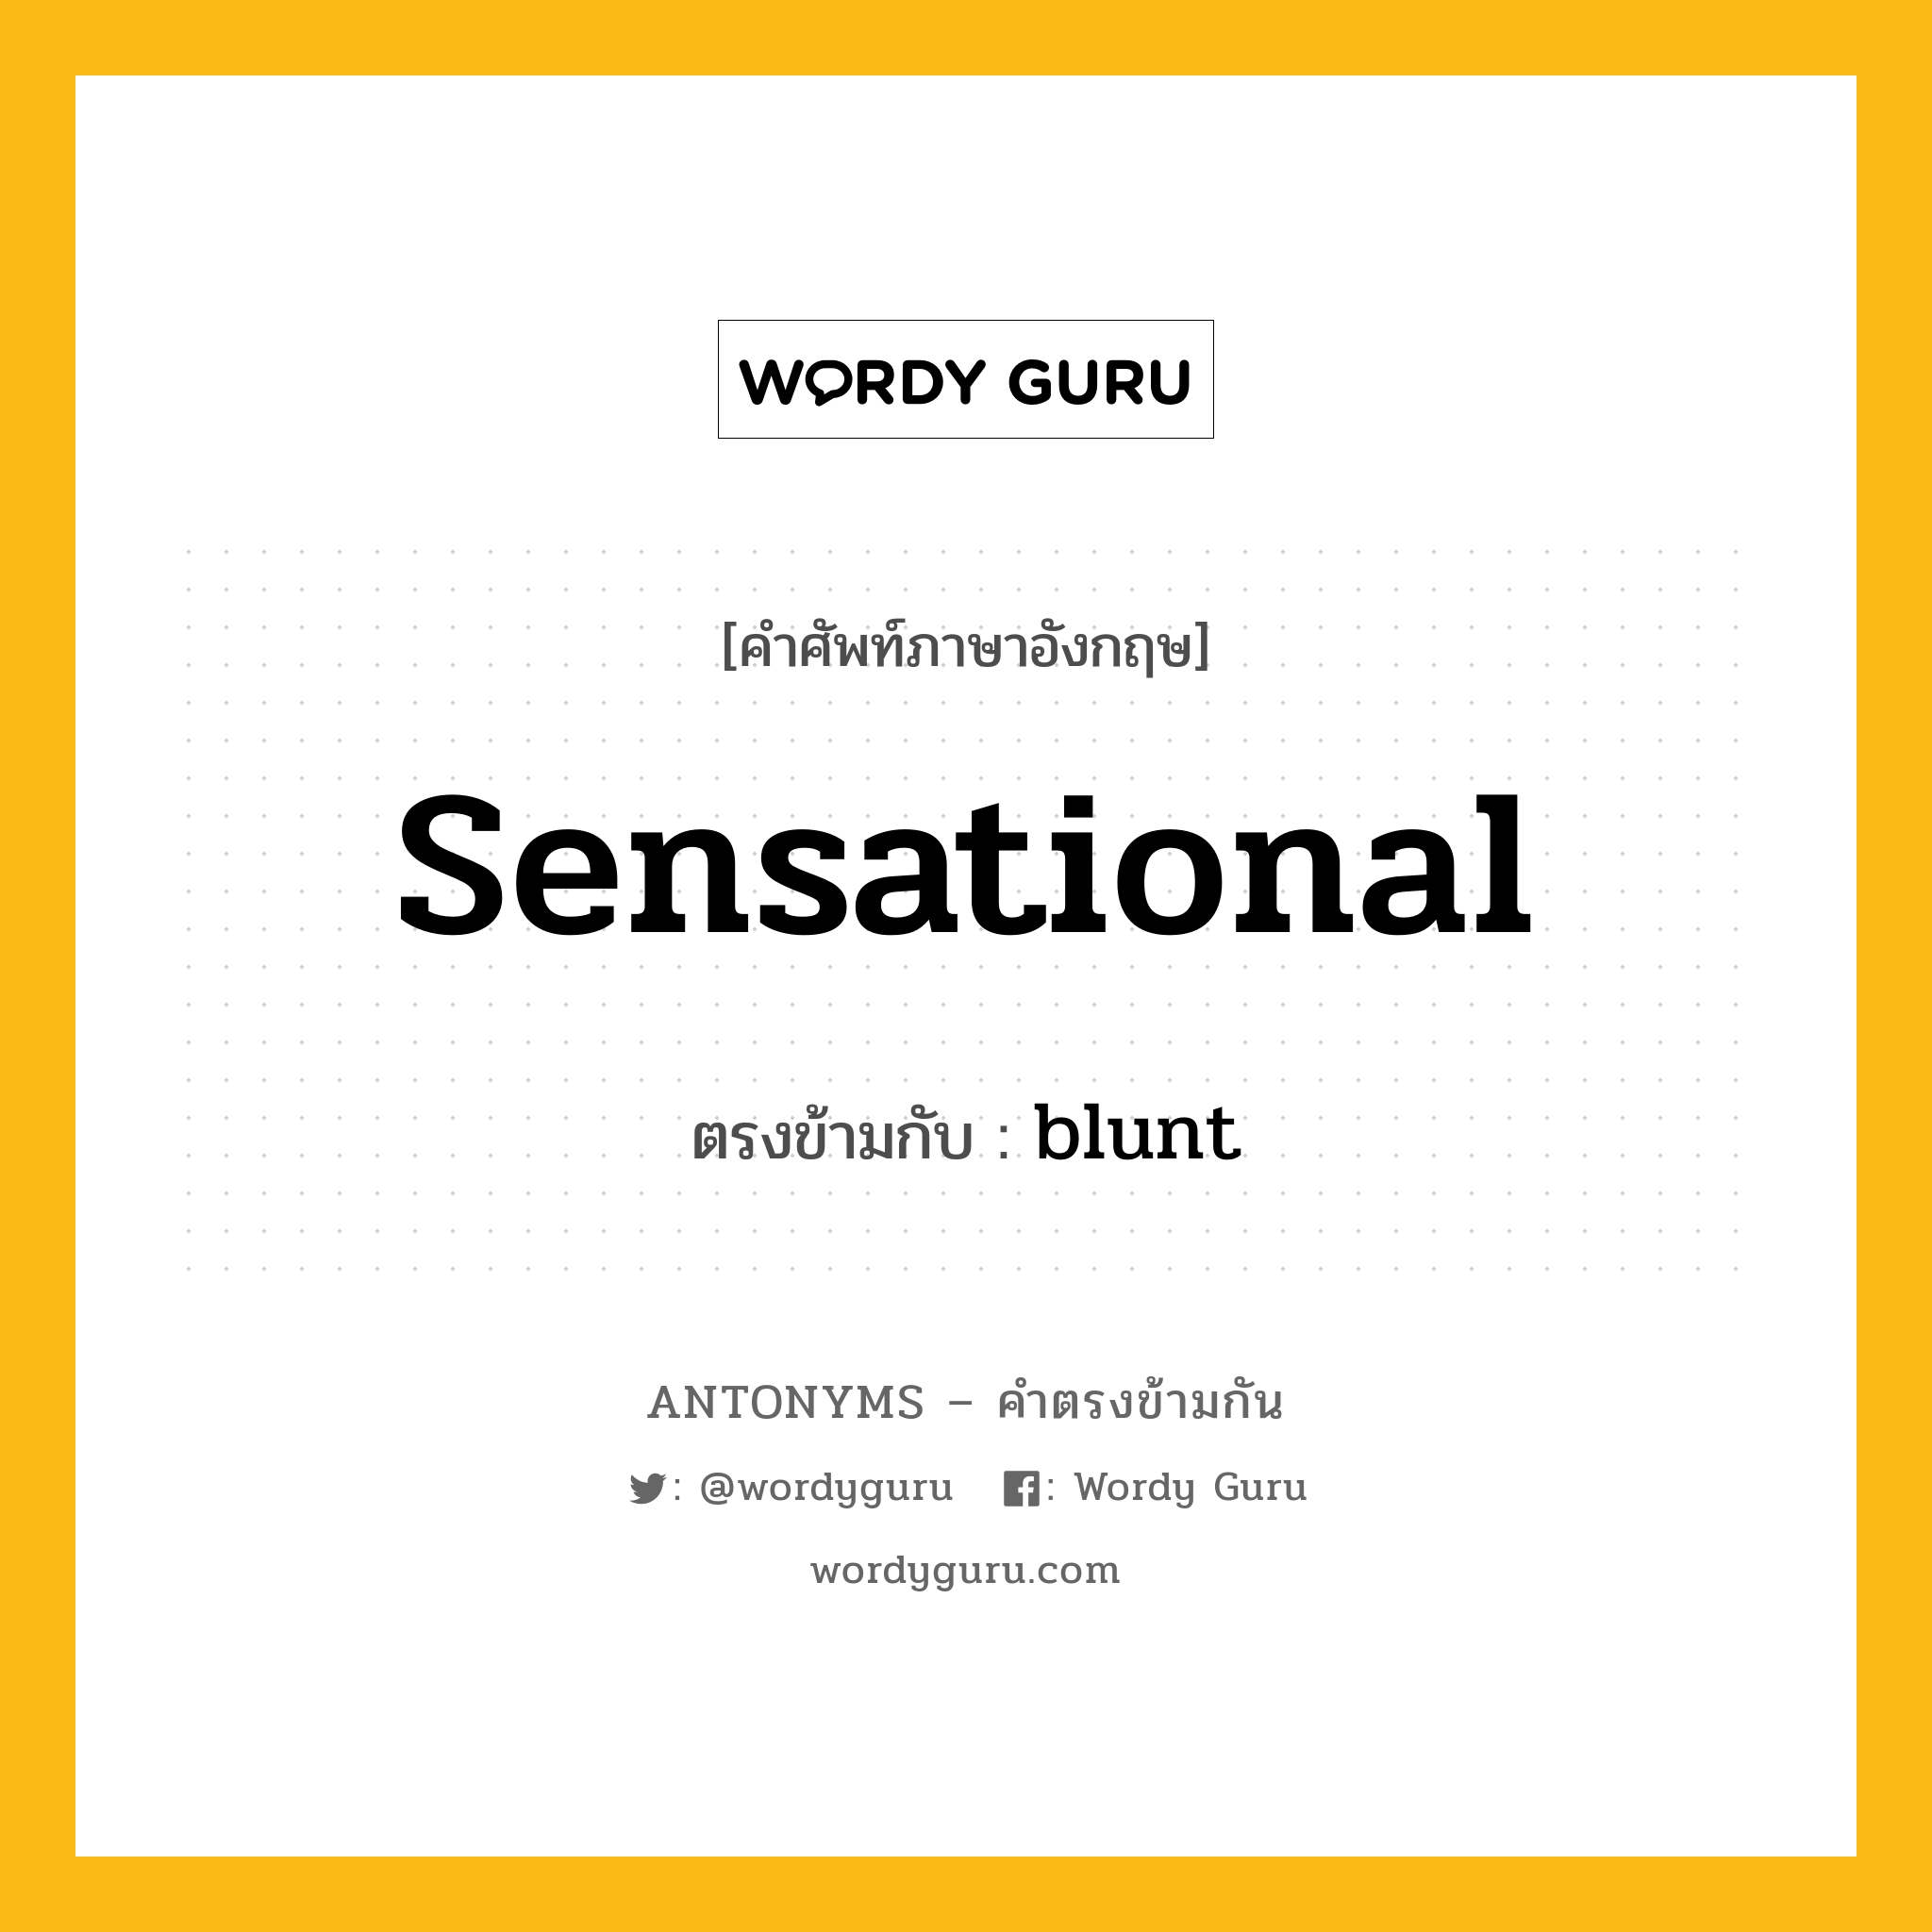 sensational เป็นคำตรงข้ามกับคำไหนบ้าง?, คำศัพท์ภาษาอังกฤษ sensational ตรงข้ามกับ blunt หมวด blunt